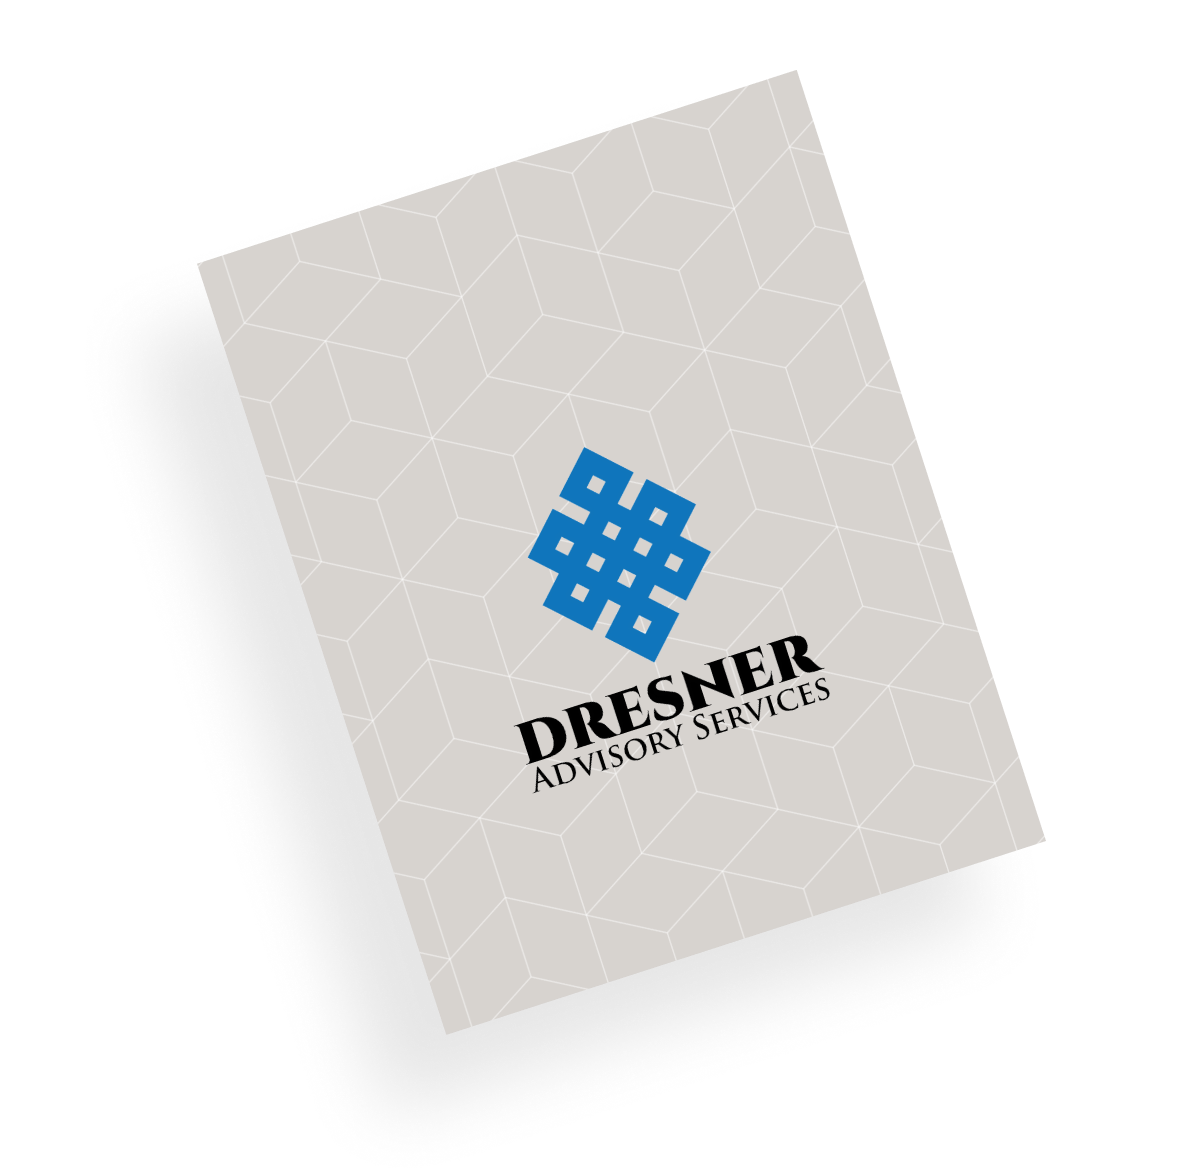 Dresner Advisory Services TARGIT